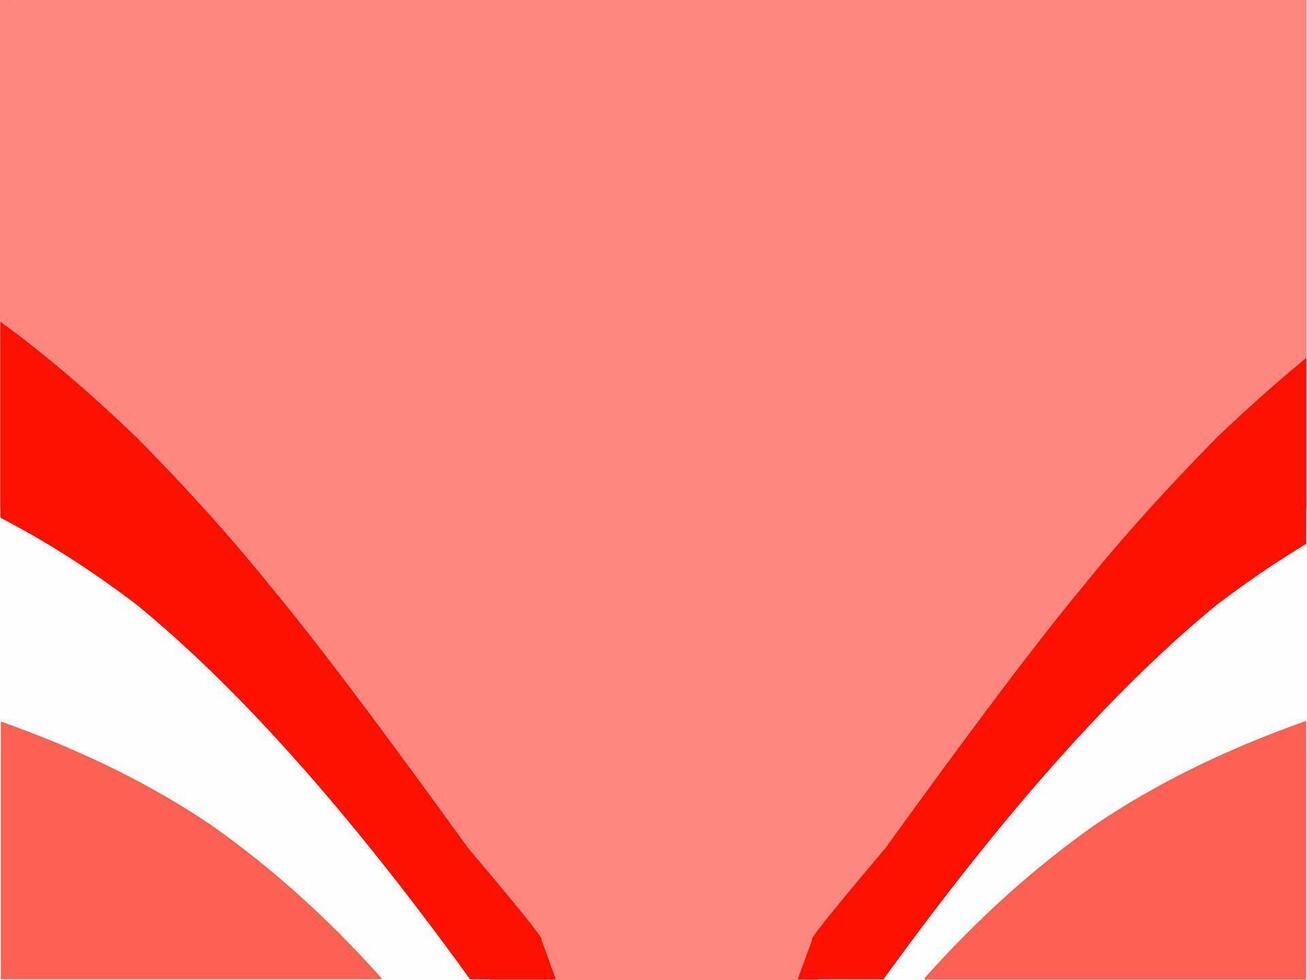 Hintergrund Illustration mit rot und Weiß Band vektor